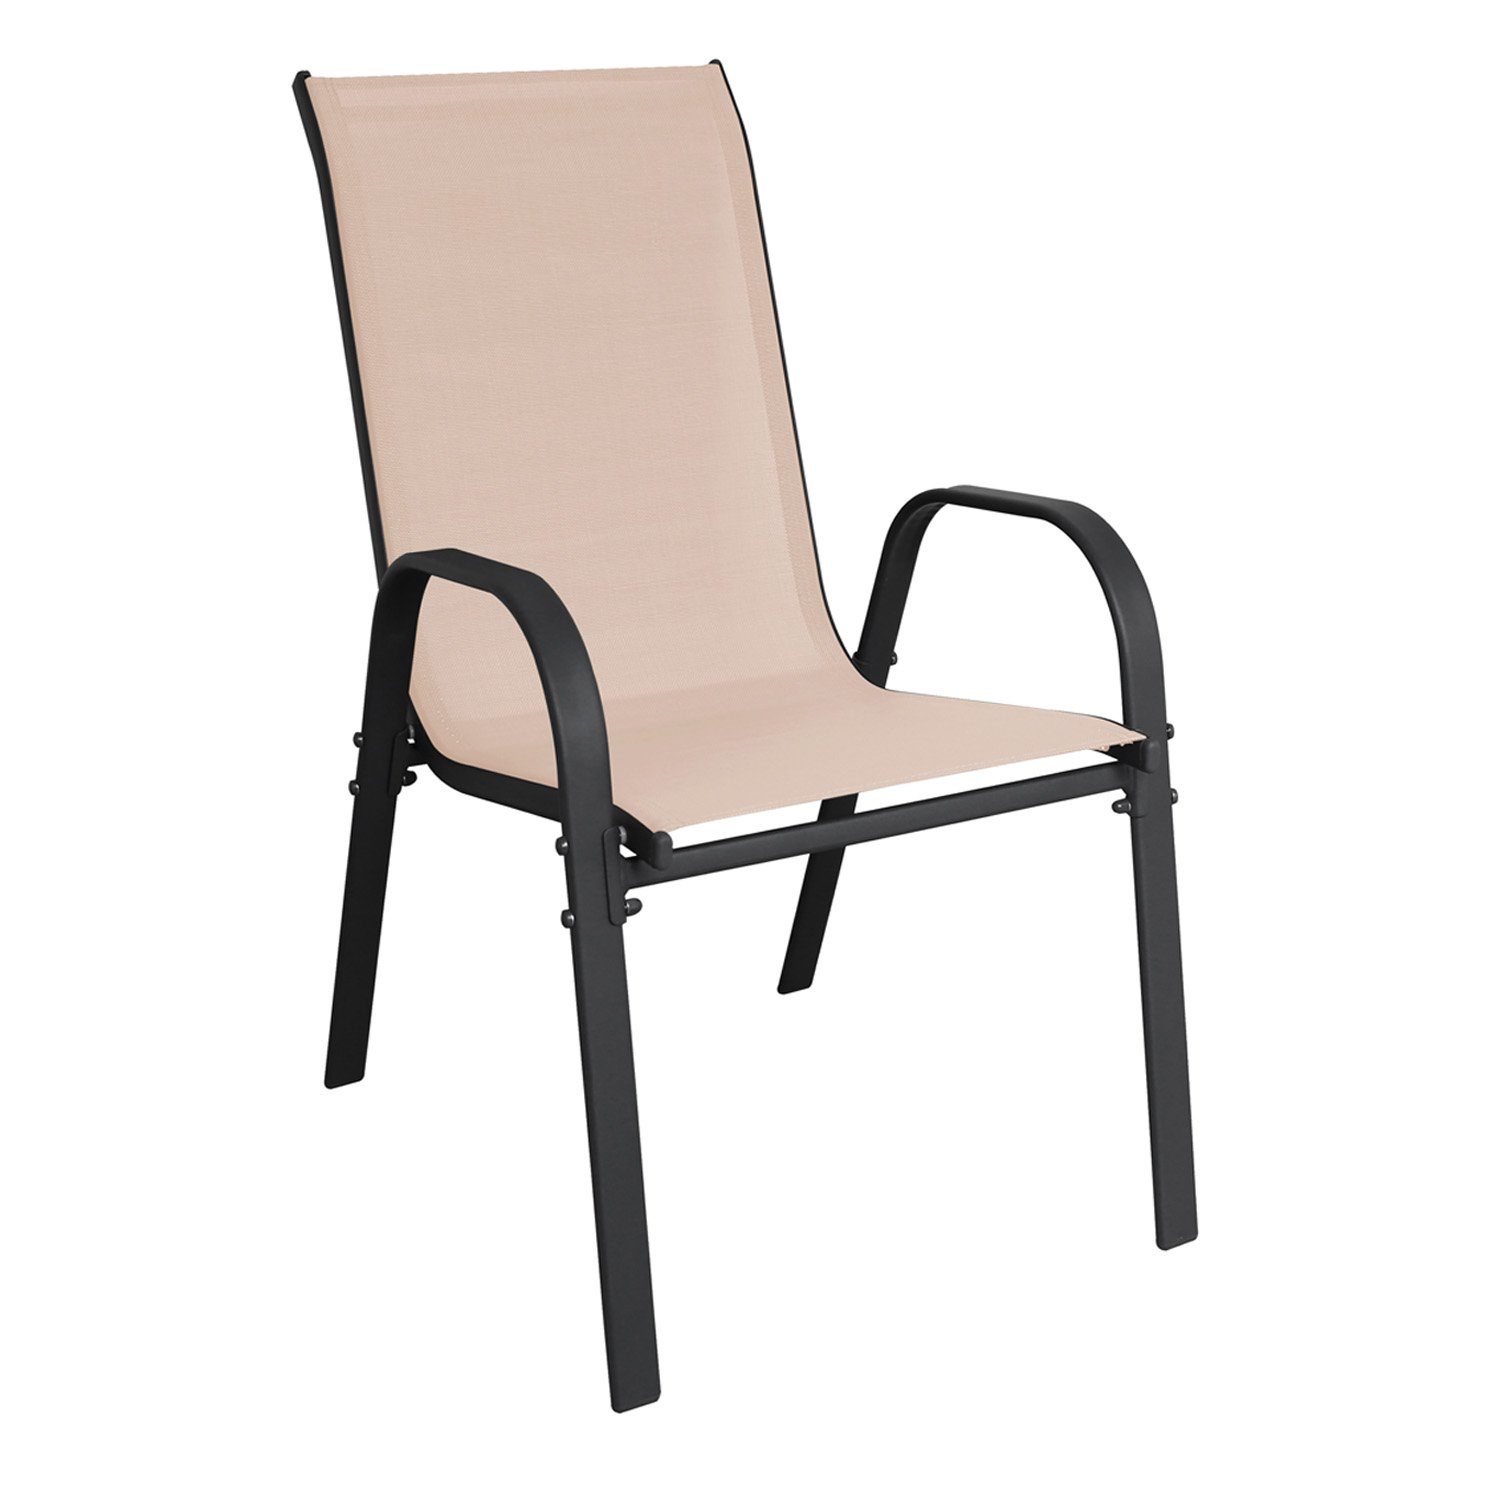 INDA-Exclusiv Armlehnstuhl Stapelstuhl Metall - Textilen Farbe Anthrazit - Beige